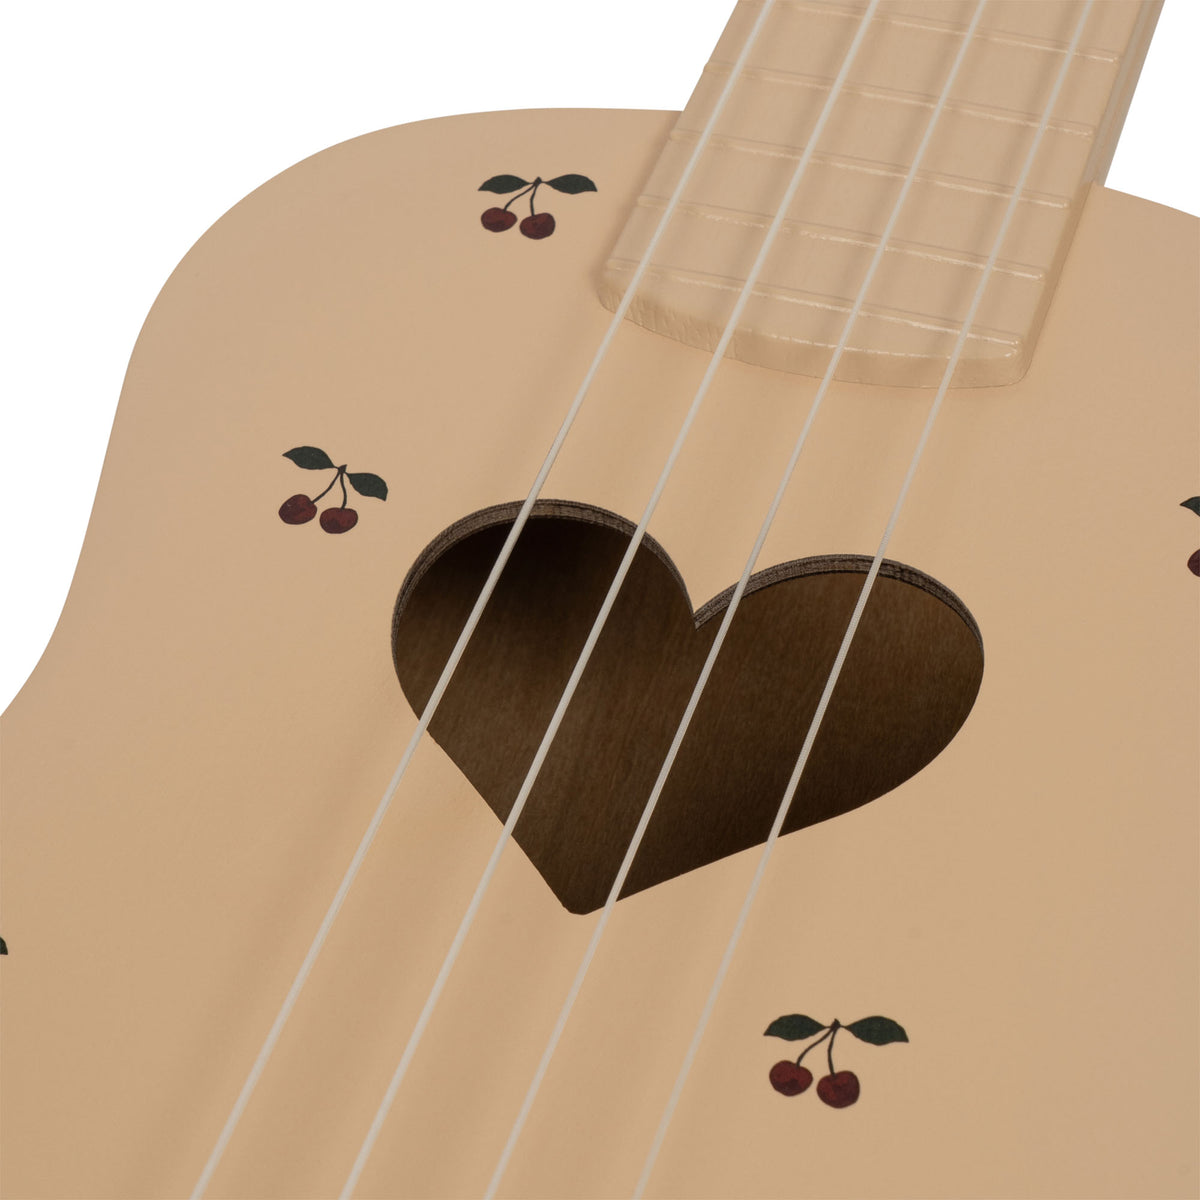 Wooden ukulele Cherry, Konges Sjold